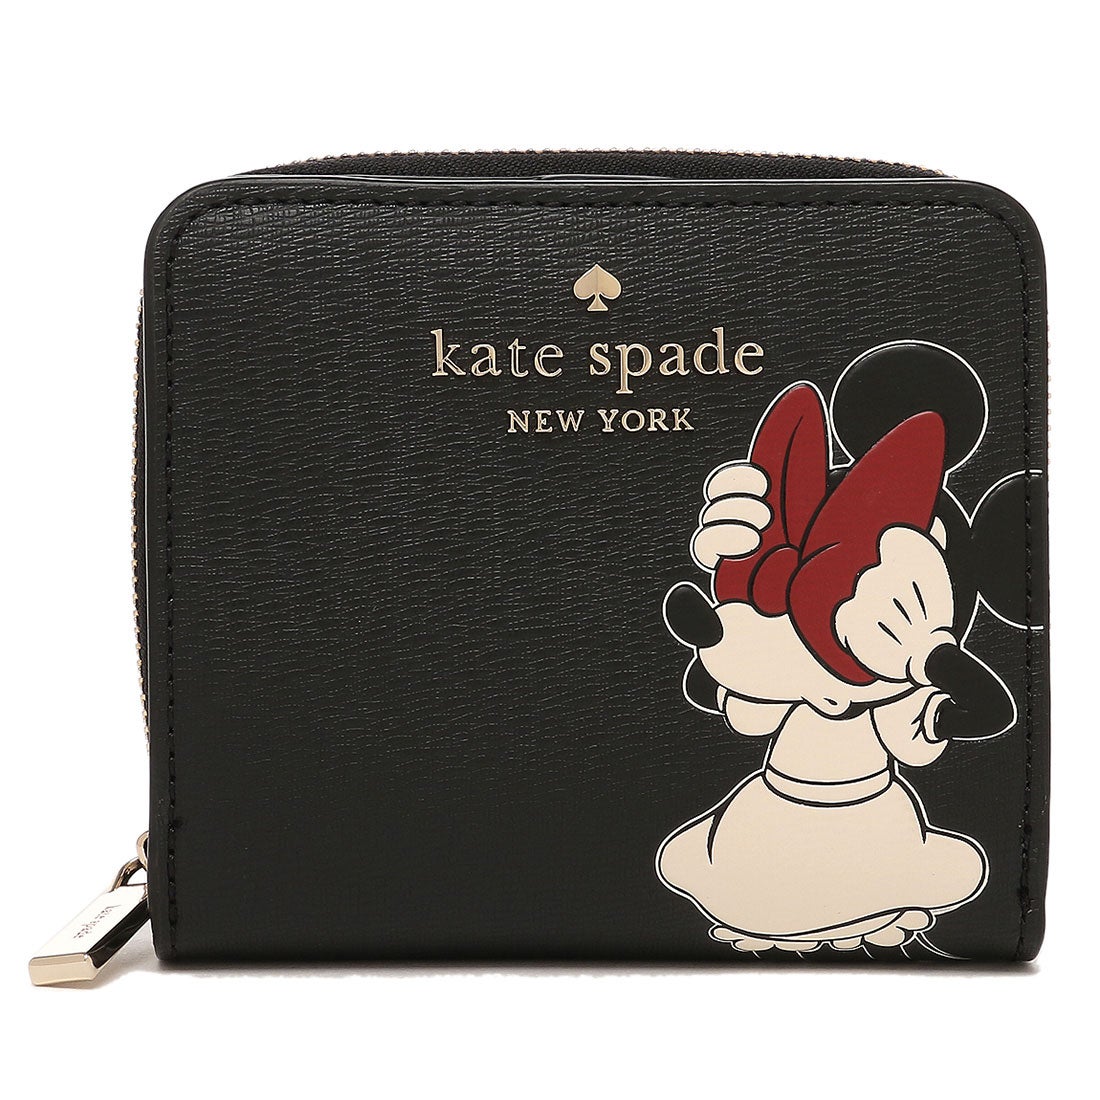 ケイトスペードニューヨーク kate spade new york アウトレット 二つ折り財布 ディズニー ミニーマウス ブラック レディース  KATE SPADE K9326 001 （BLACK MULTI）